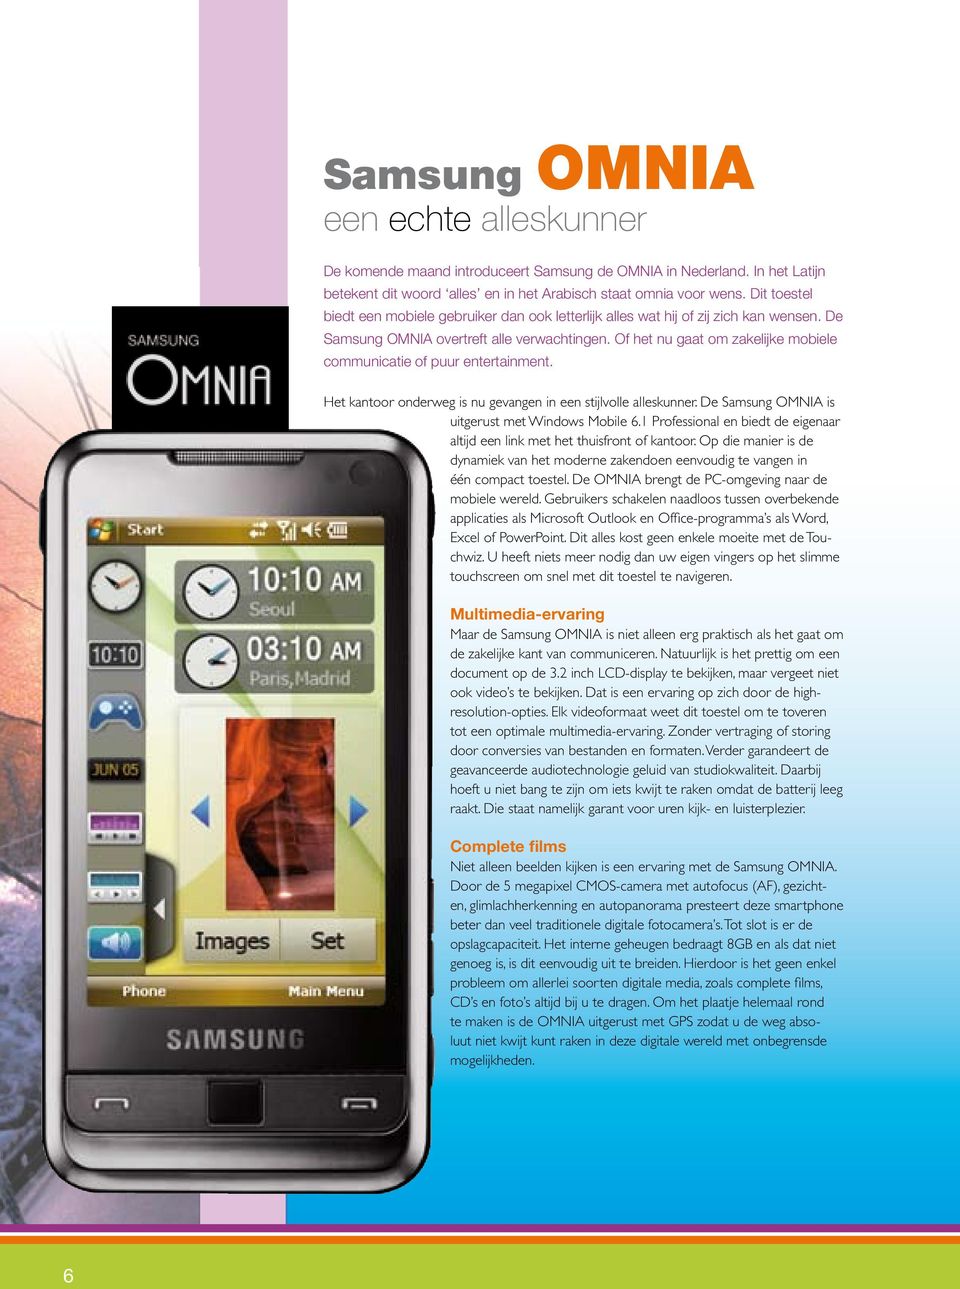 Of het nu gaat om zakelijke mobiele communicatie of puur entertainment. Het kantoor onderweg is nu gevangen in een stijlvolle alleskunner. De Samsung OMNIA is uitgerust met Windows Mobile 6.